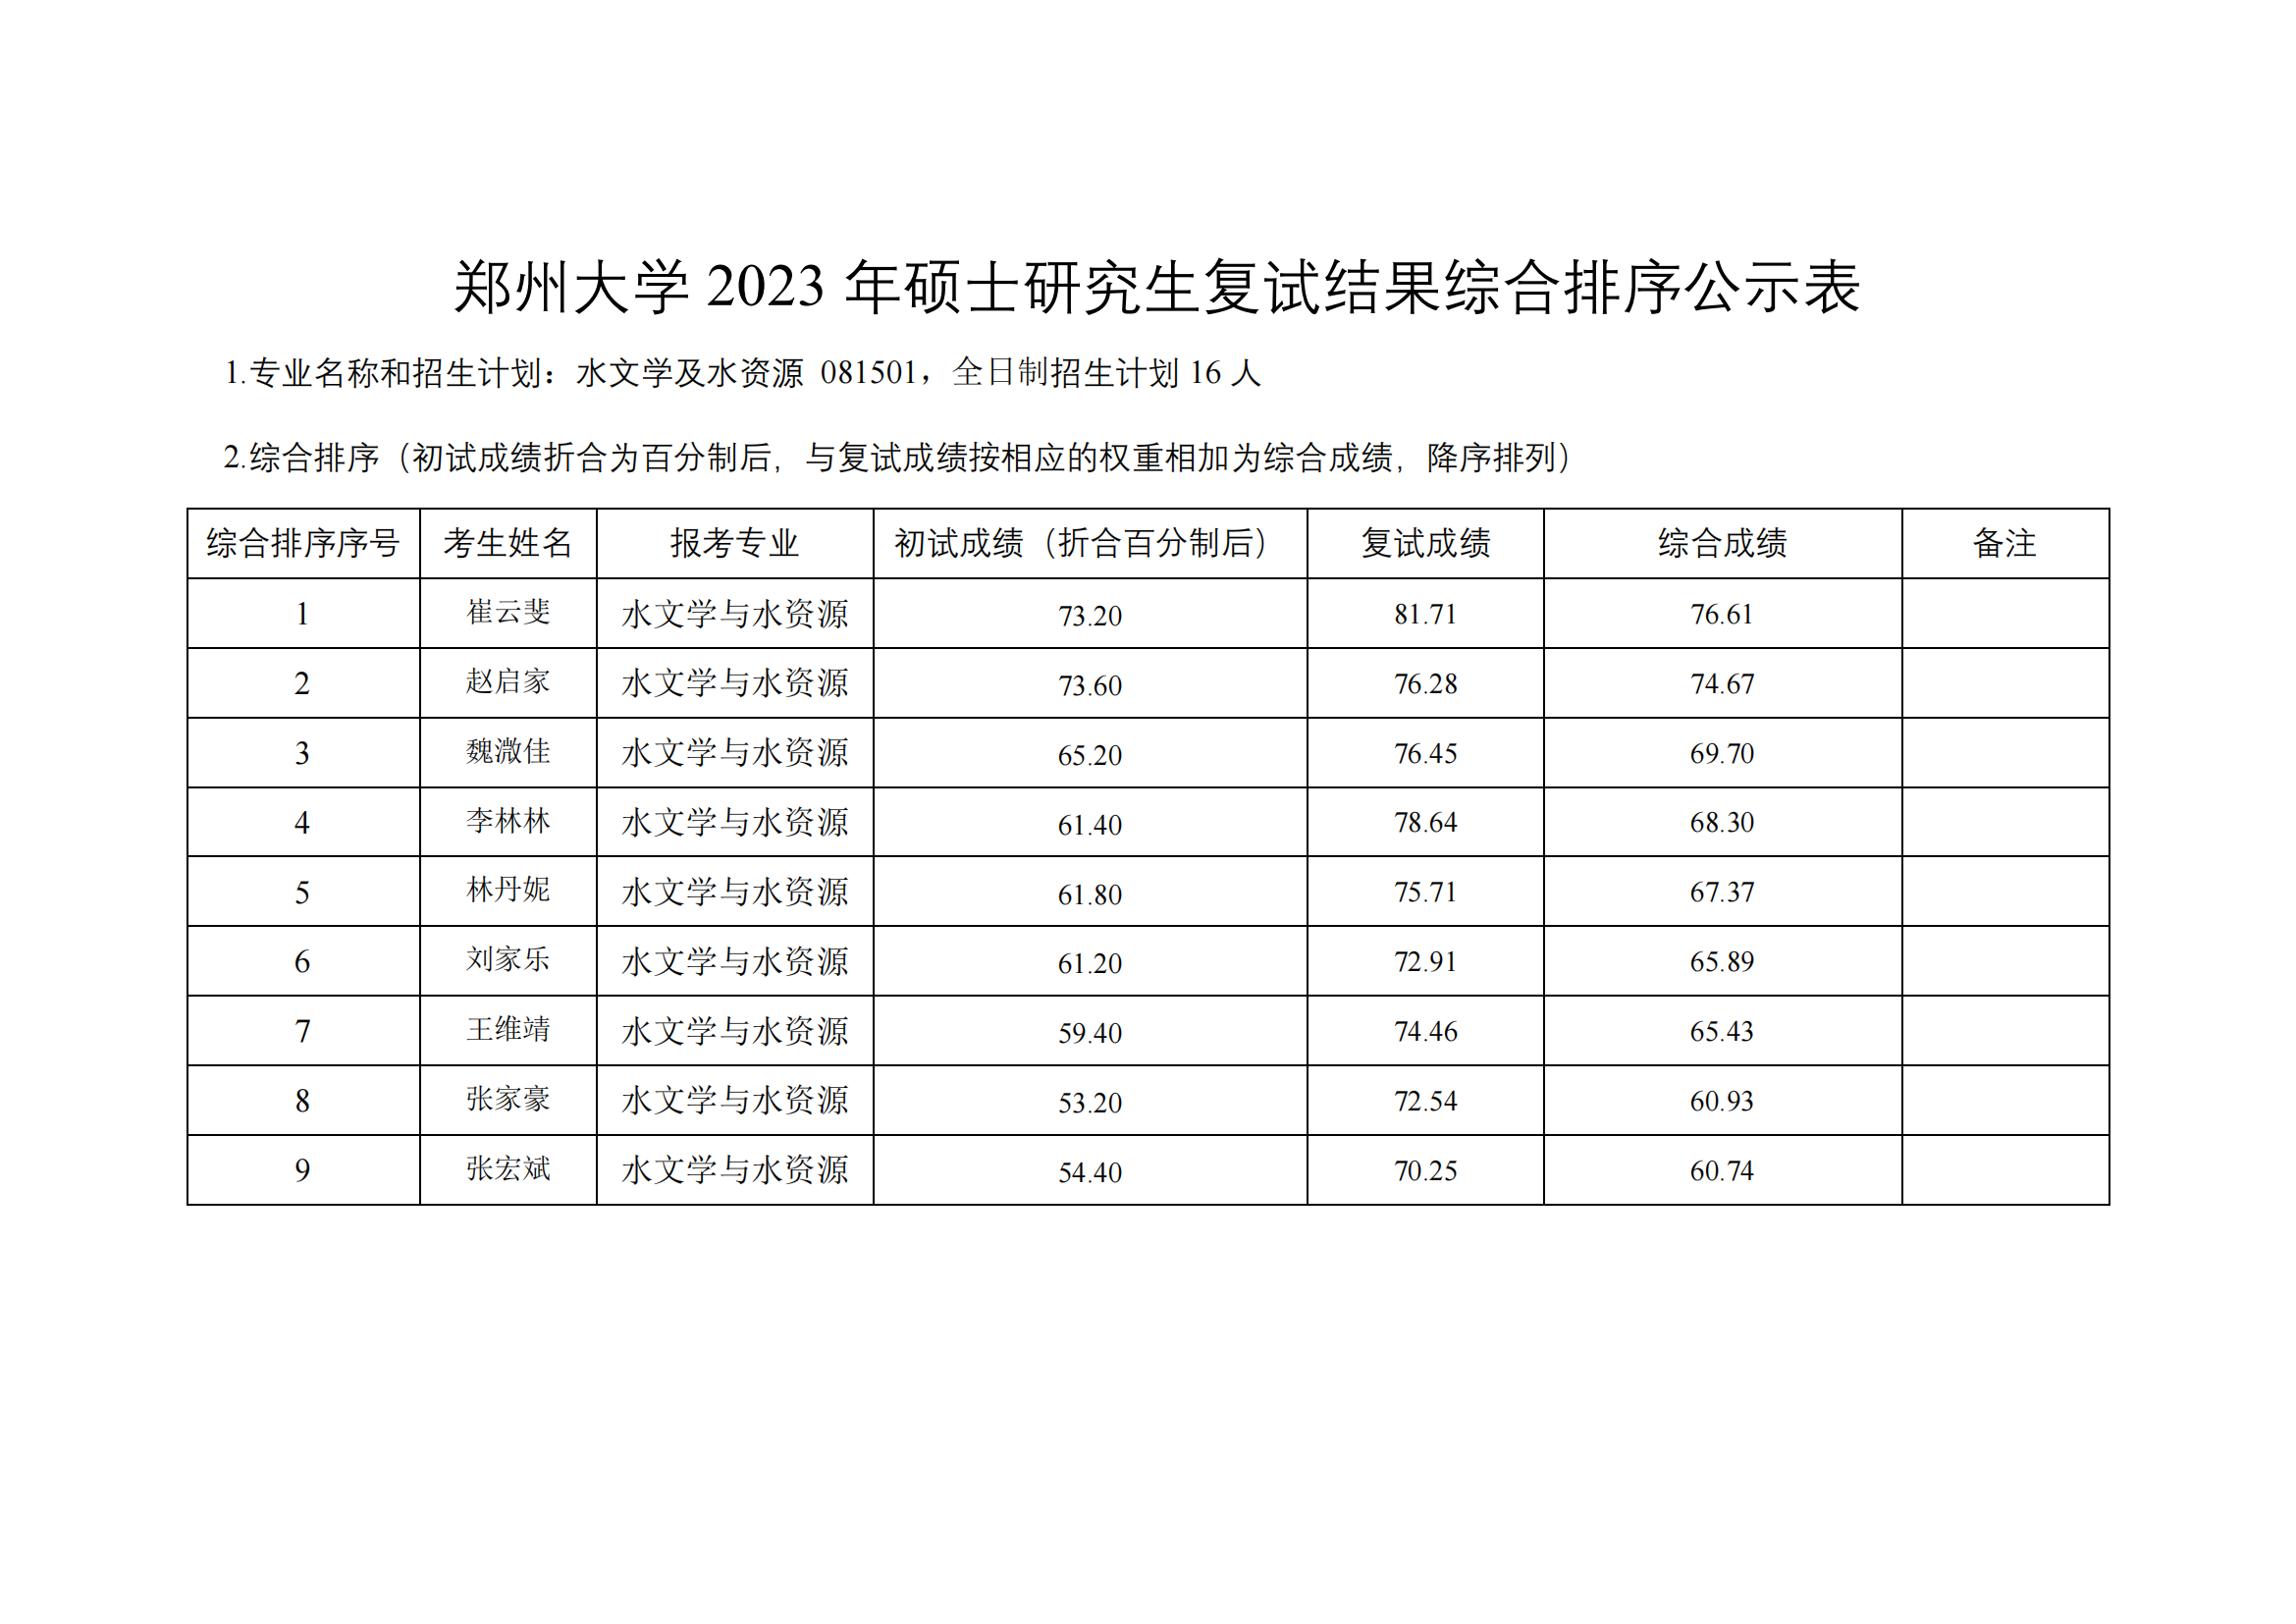 郑州大学水利与土木工程学院（原水利科学与工程学院专业方向）－2023年一志愿硕士研究生复试结果综合排序公示表-20230402(2)_03.png